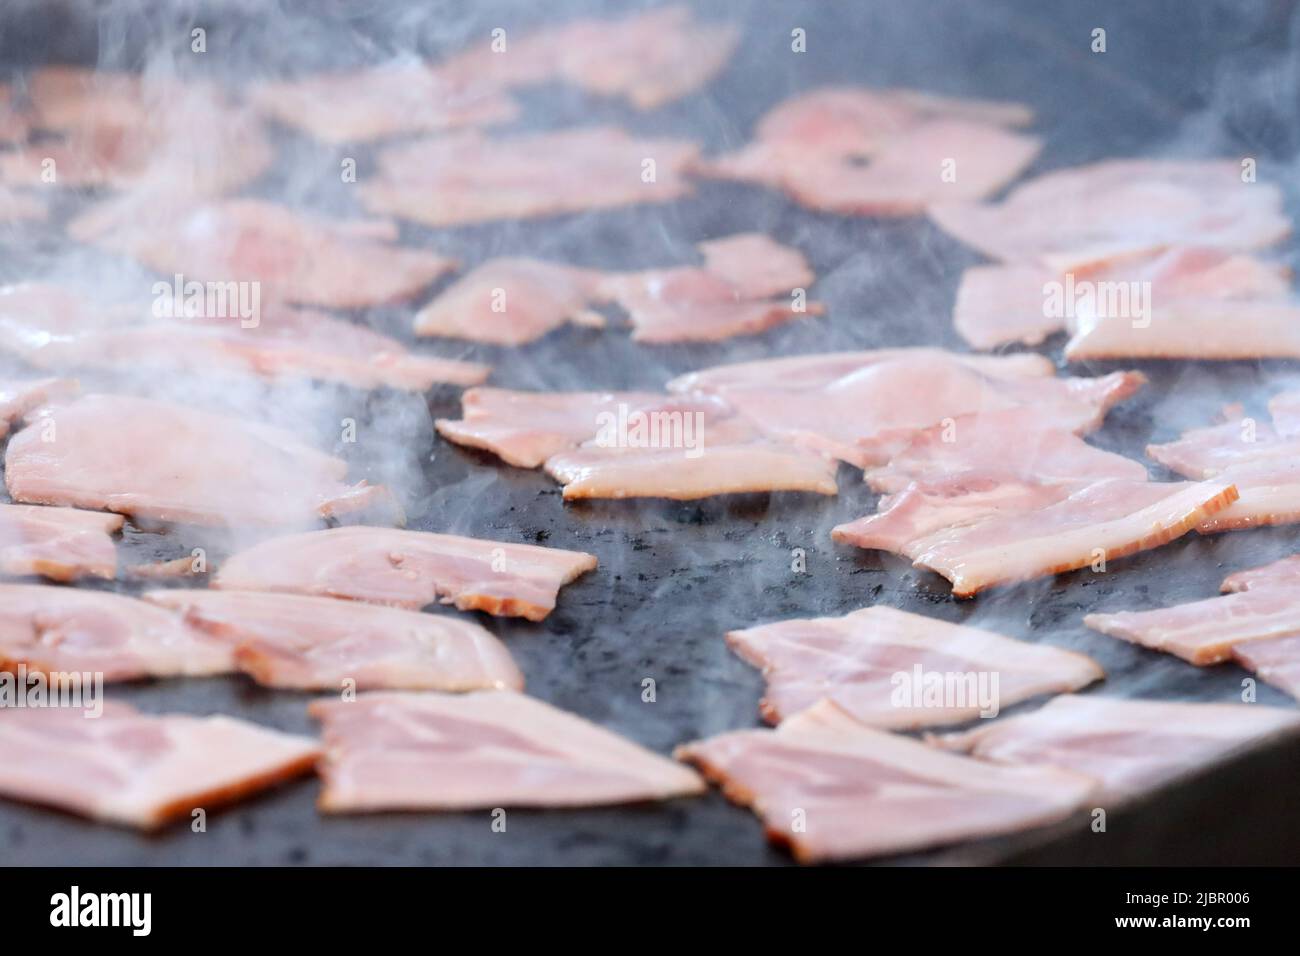 Immagini ravvicinate di una grande quantità di bacon cucinato e sfrigolante su un piatto nero per barbecue o un piatto caldo. Fumo parzialmente sfocando lo sfondo come il bac Foto Stock